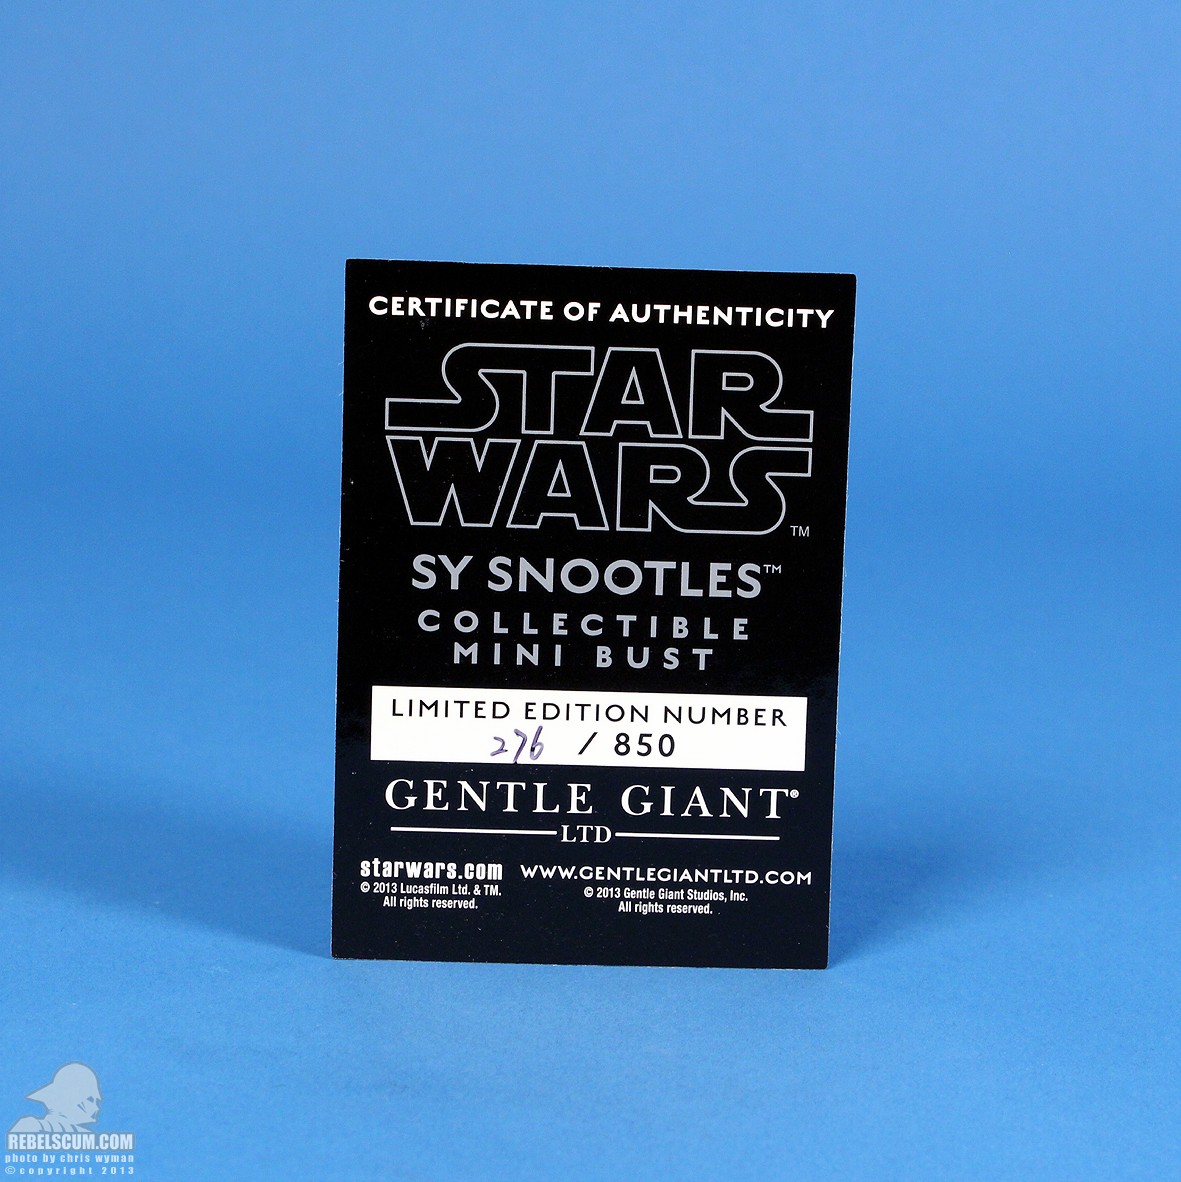 Sy-Snootles-Mini-Bust-Gentle-Giant-Ltd-026.jpg